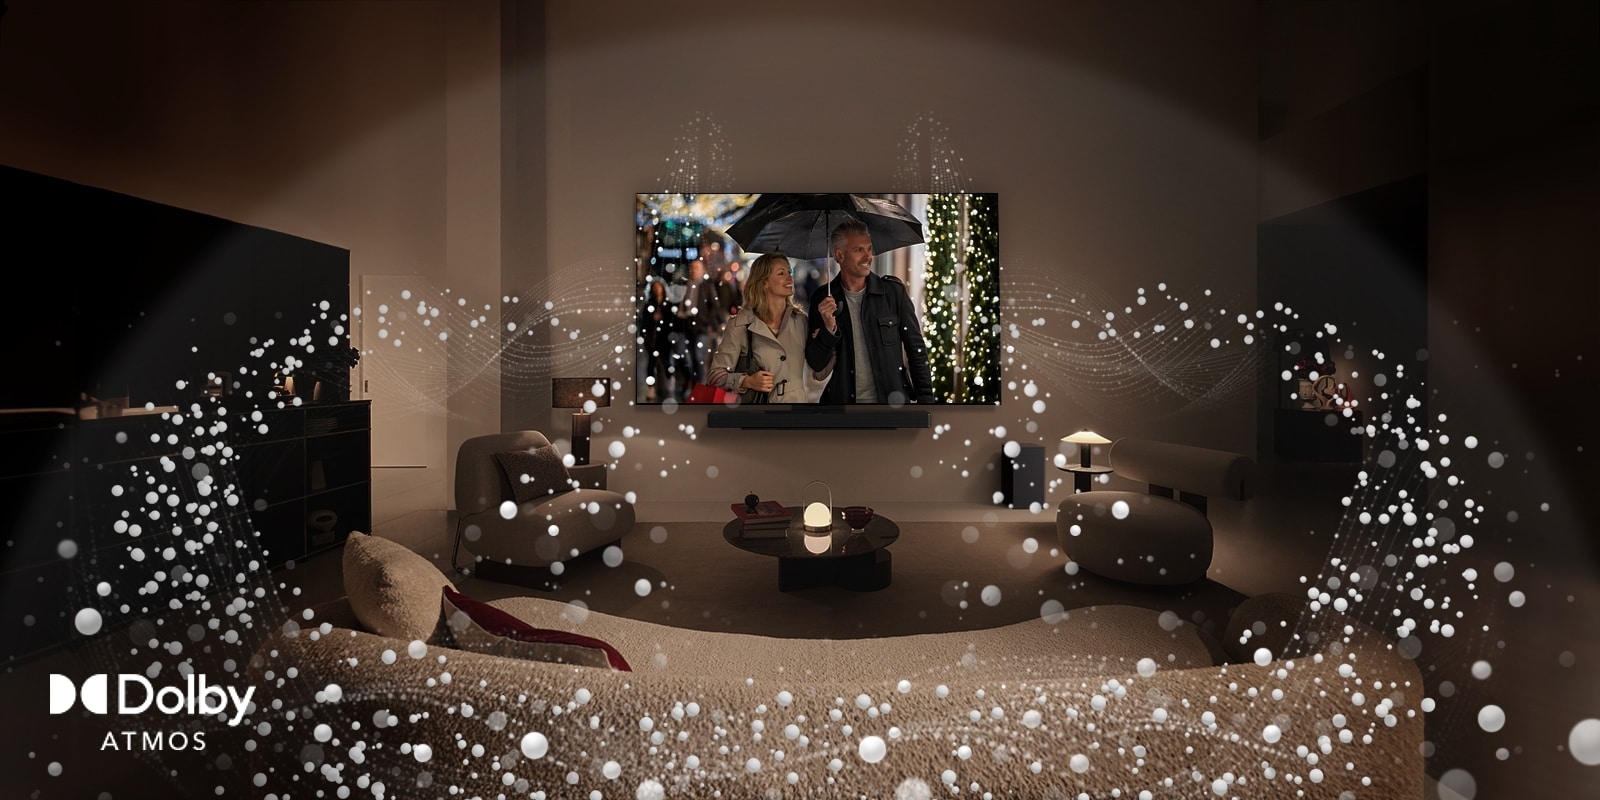 Уютное, слегка освещенное жилое пространство, на экране телевизора LG OLED TV демонстрируется пара, использующая зонт, а яркая графика в виде кругов окружает комнату. Logo технологии Dolby Atmos в левом нижнем углу.